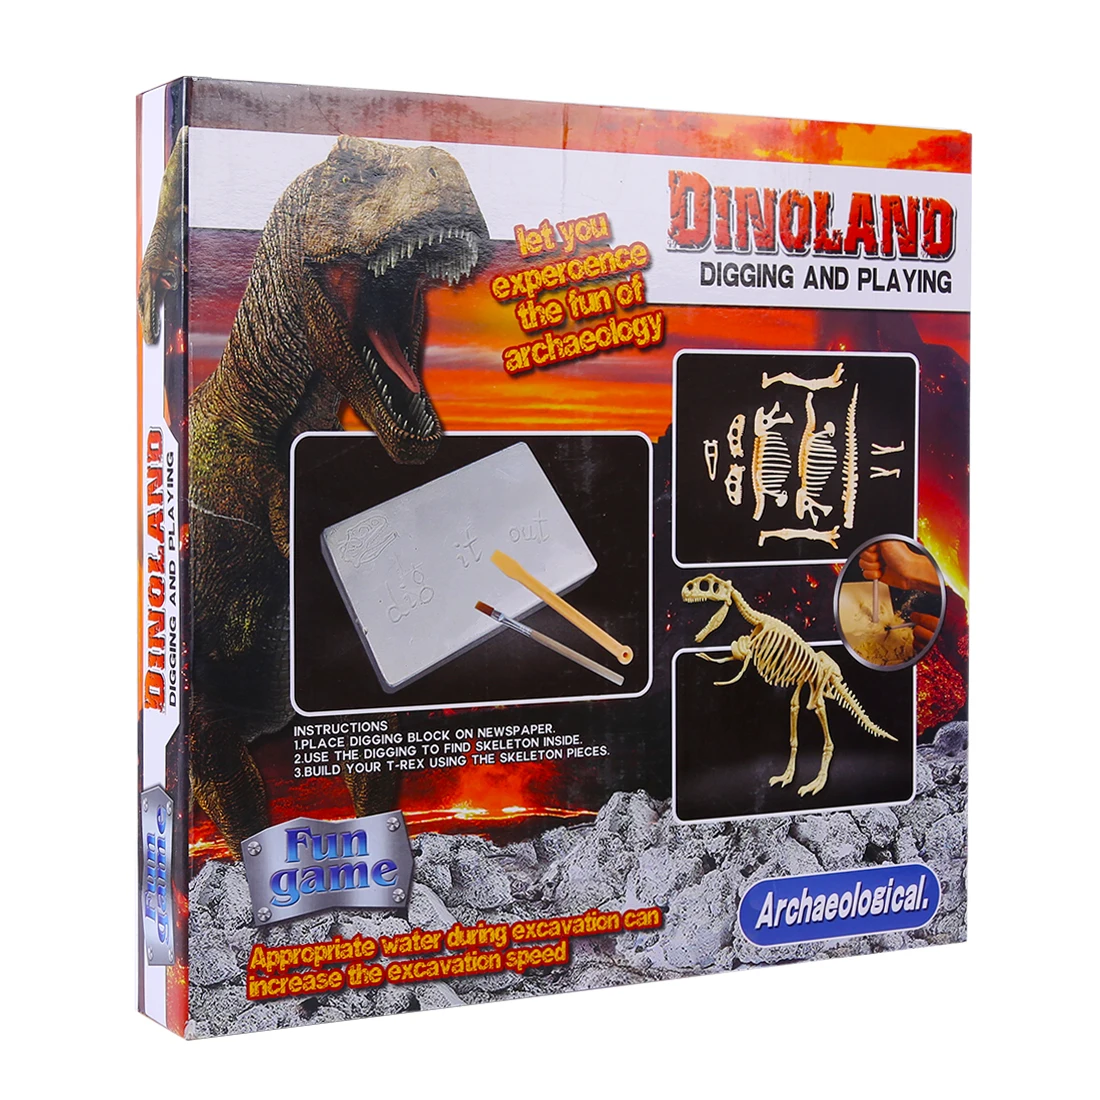 Surwish Deluxe Edition детская сборка Динозавр для раскопок, игрушки для детей